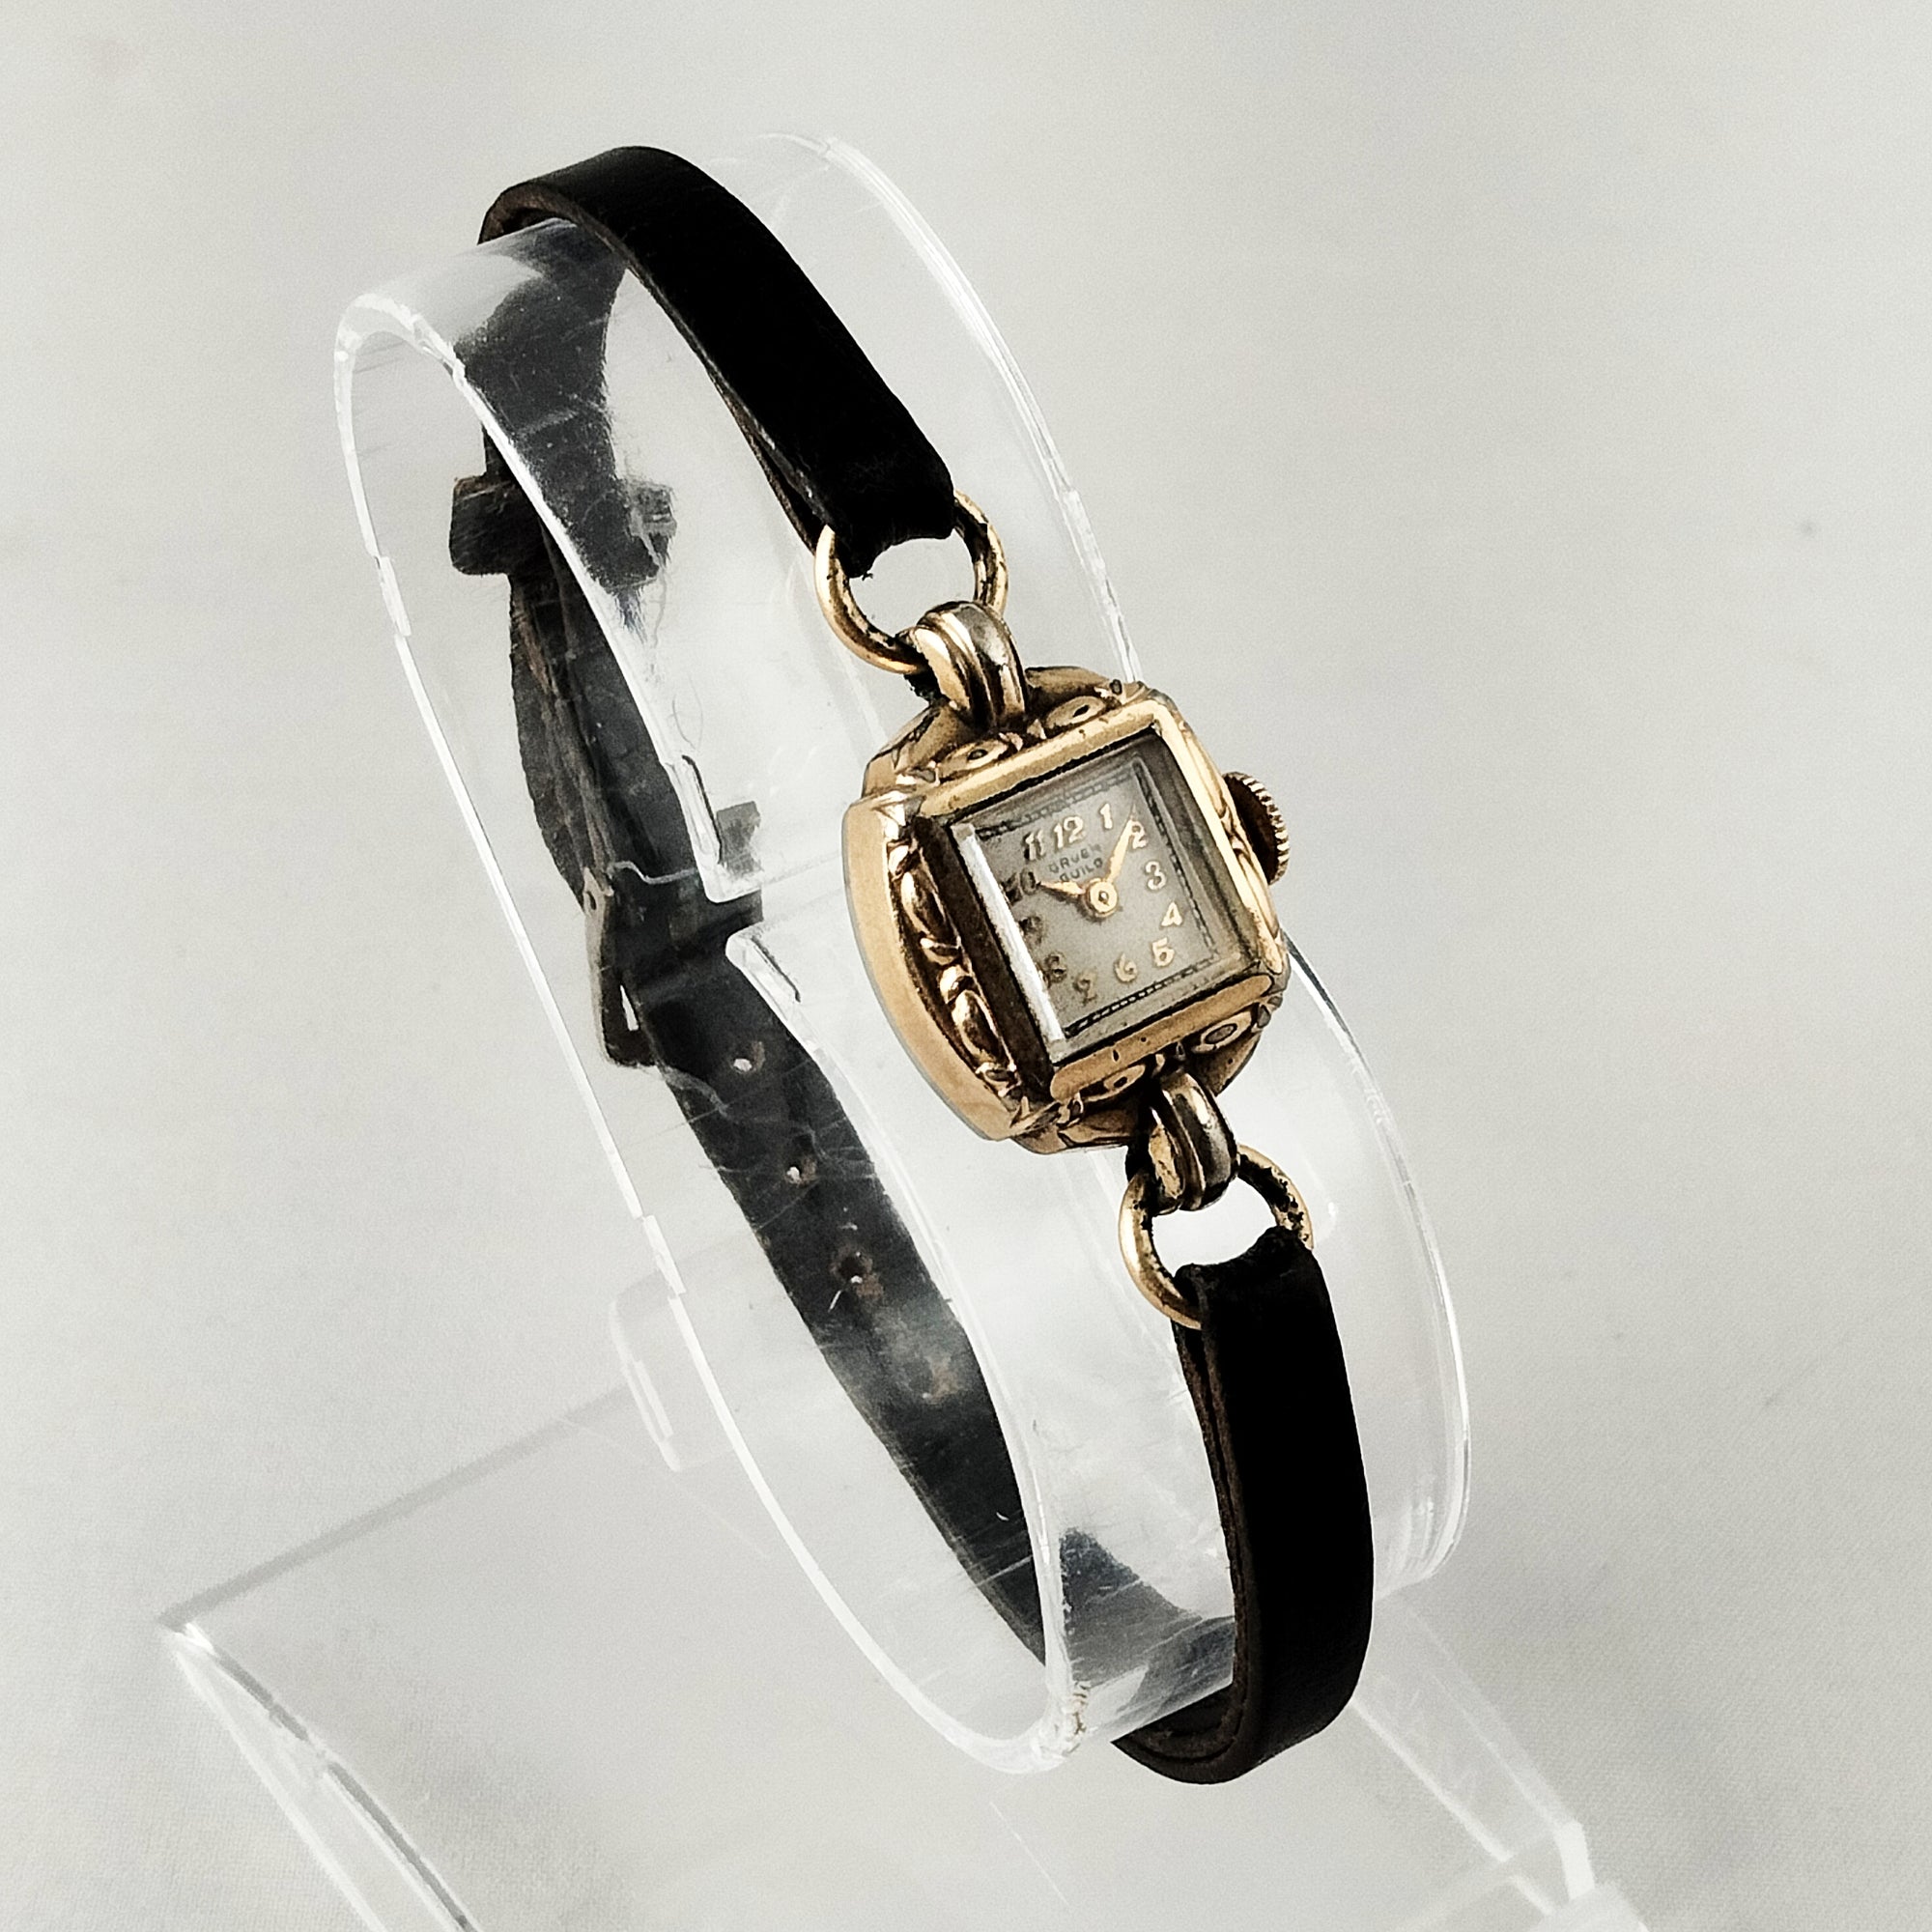 Gruen Women's Watch, Art Deco Style, Black Leather Strap